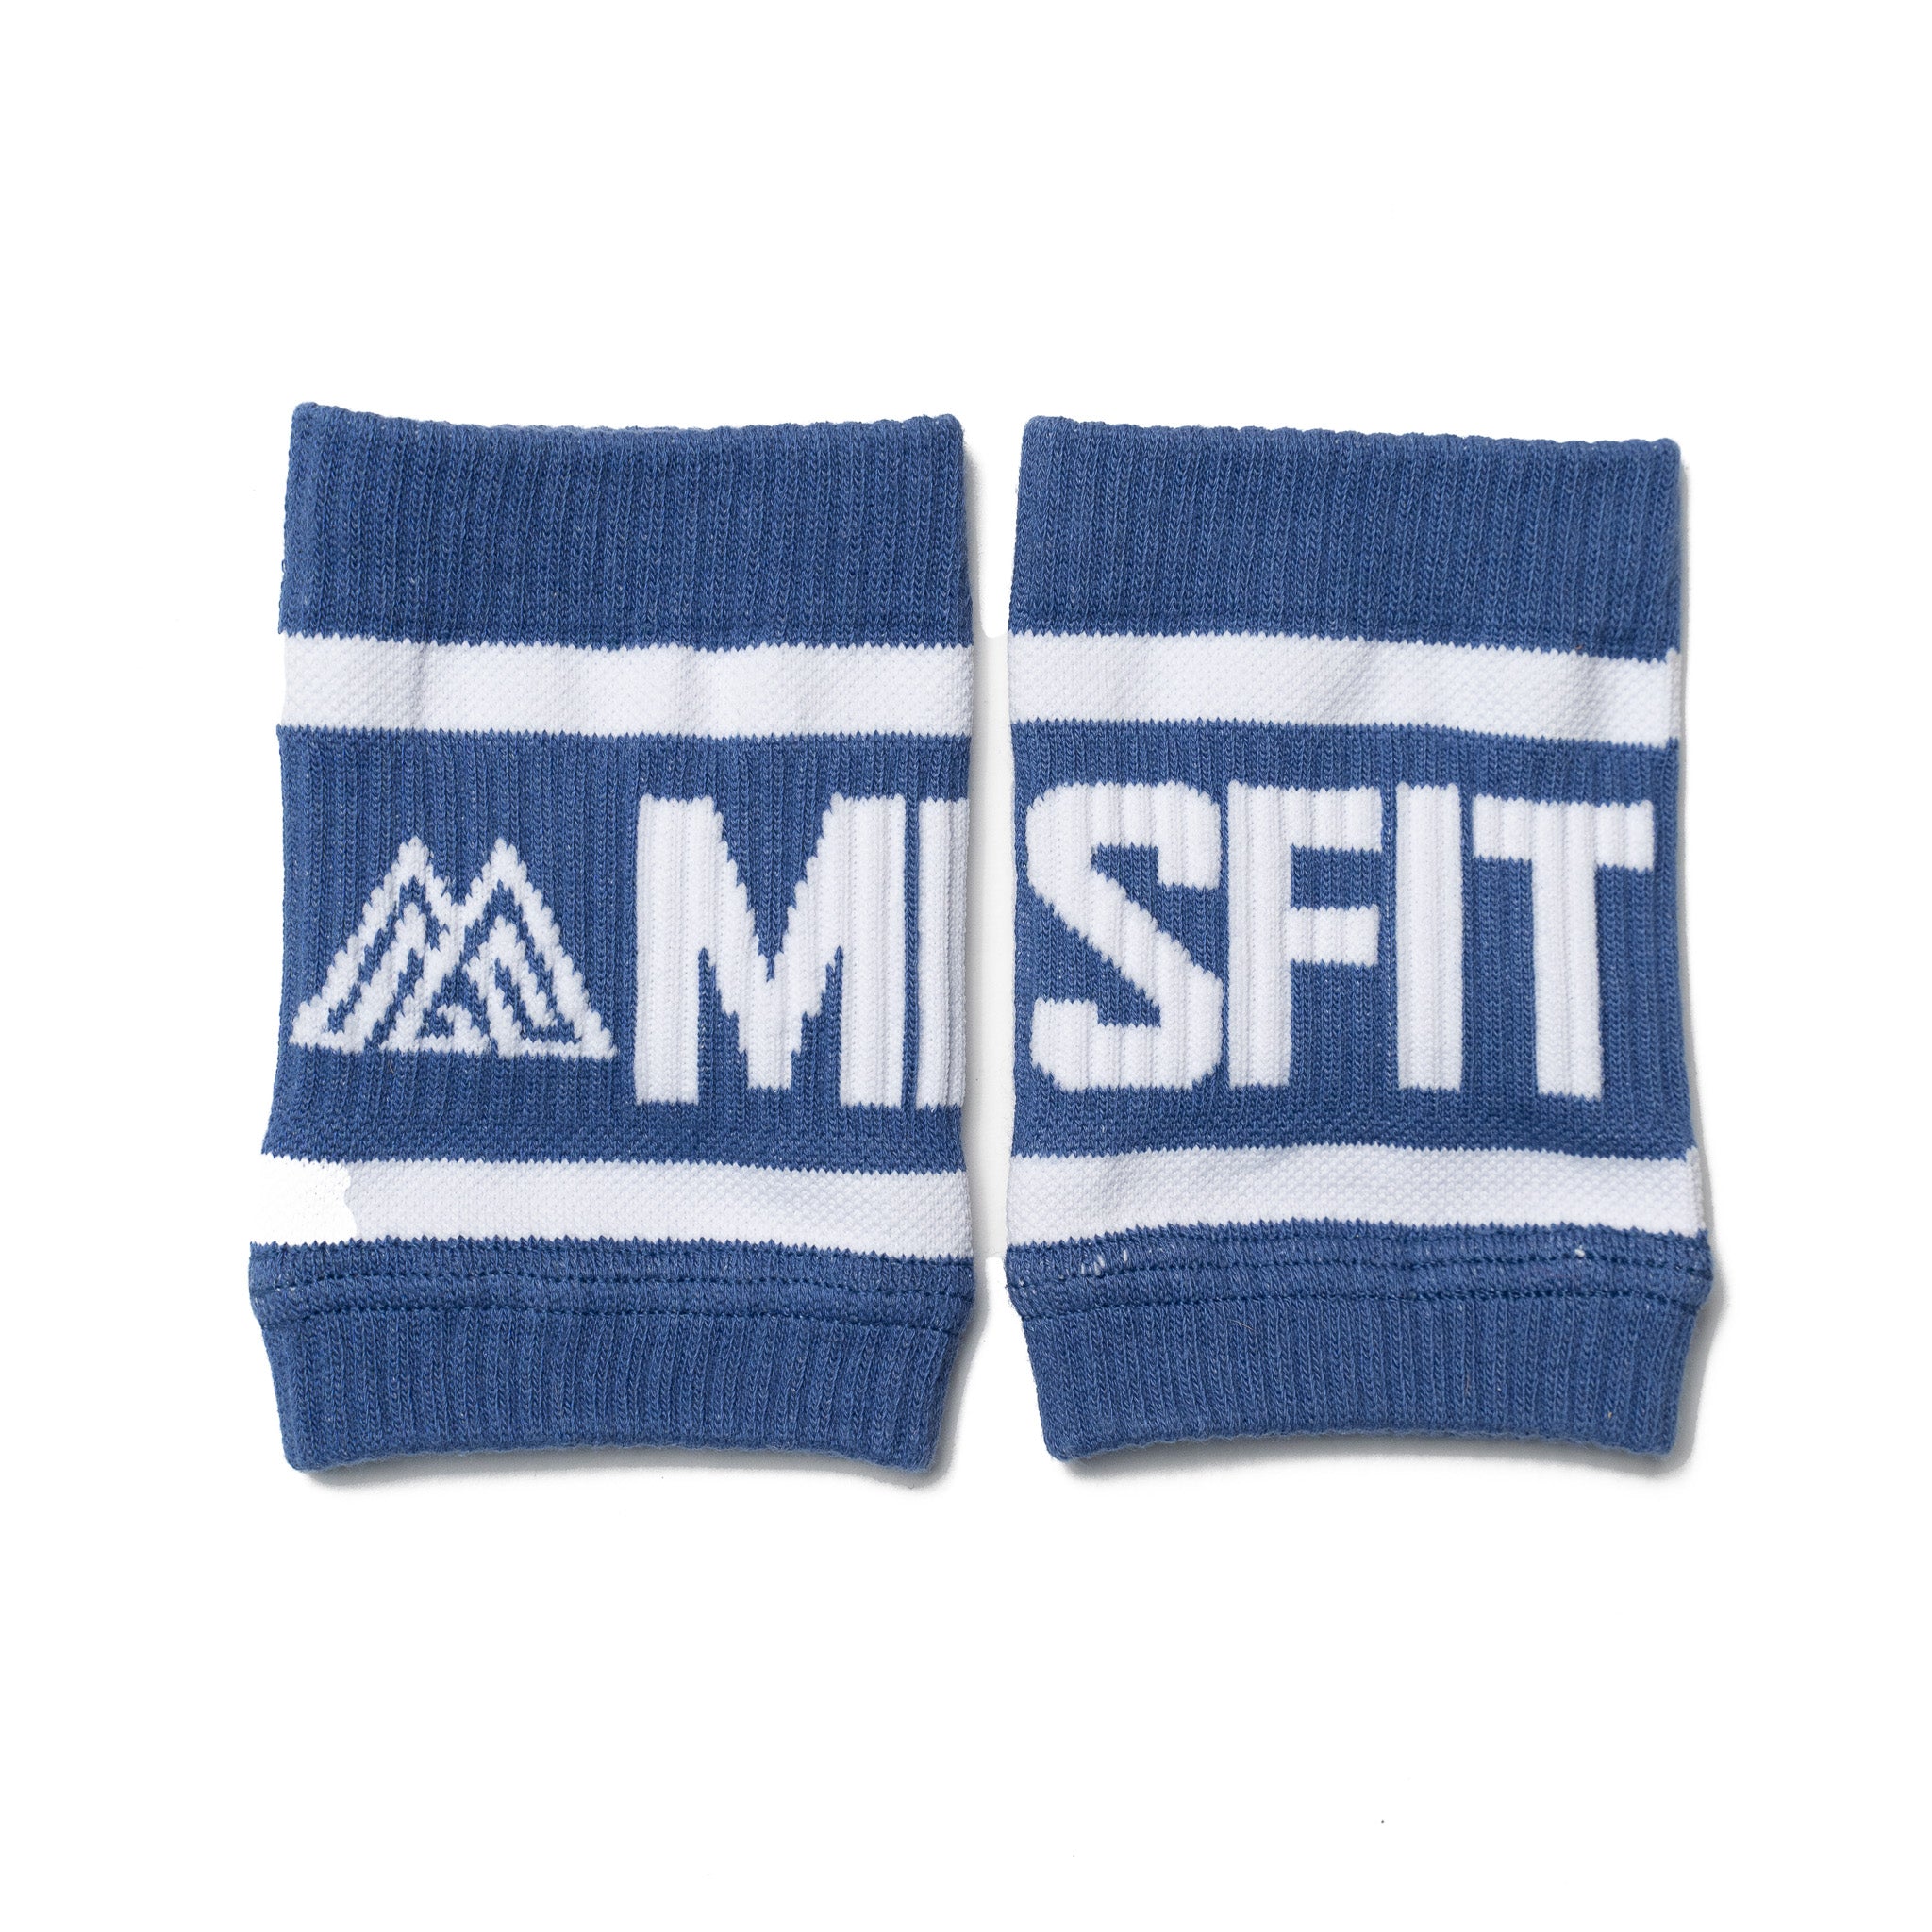 MISFIT Sweatbands